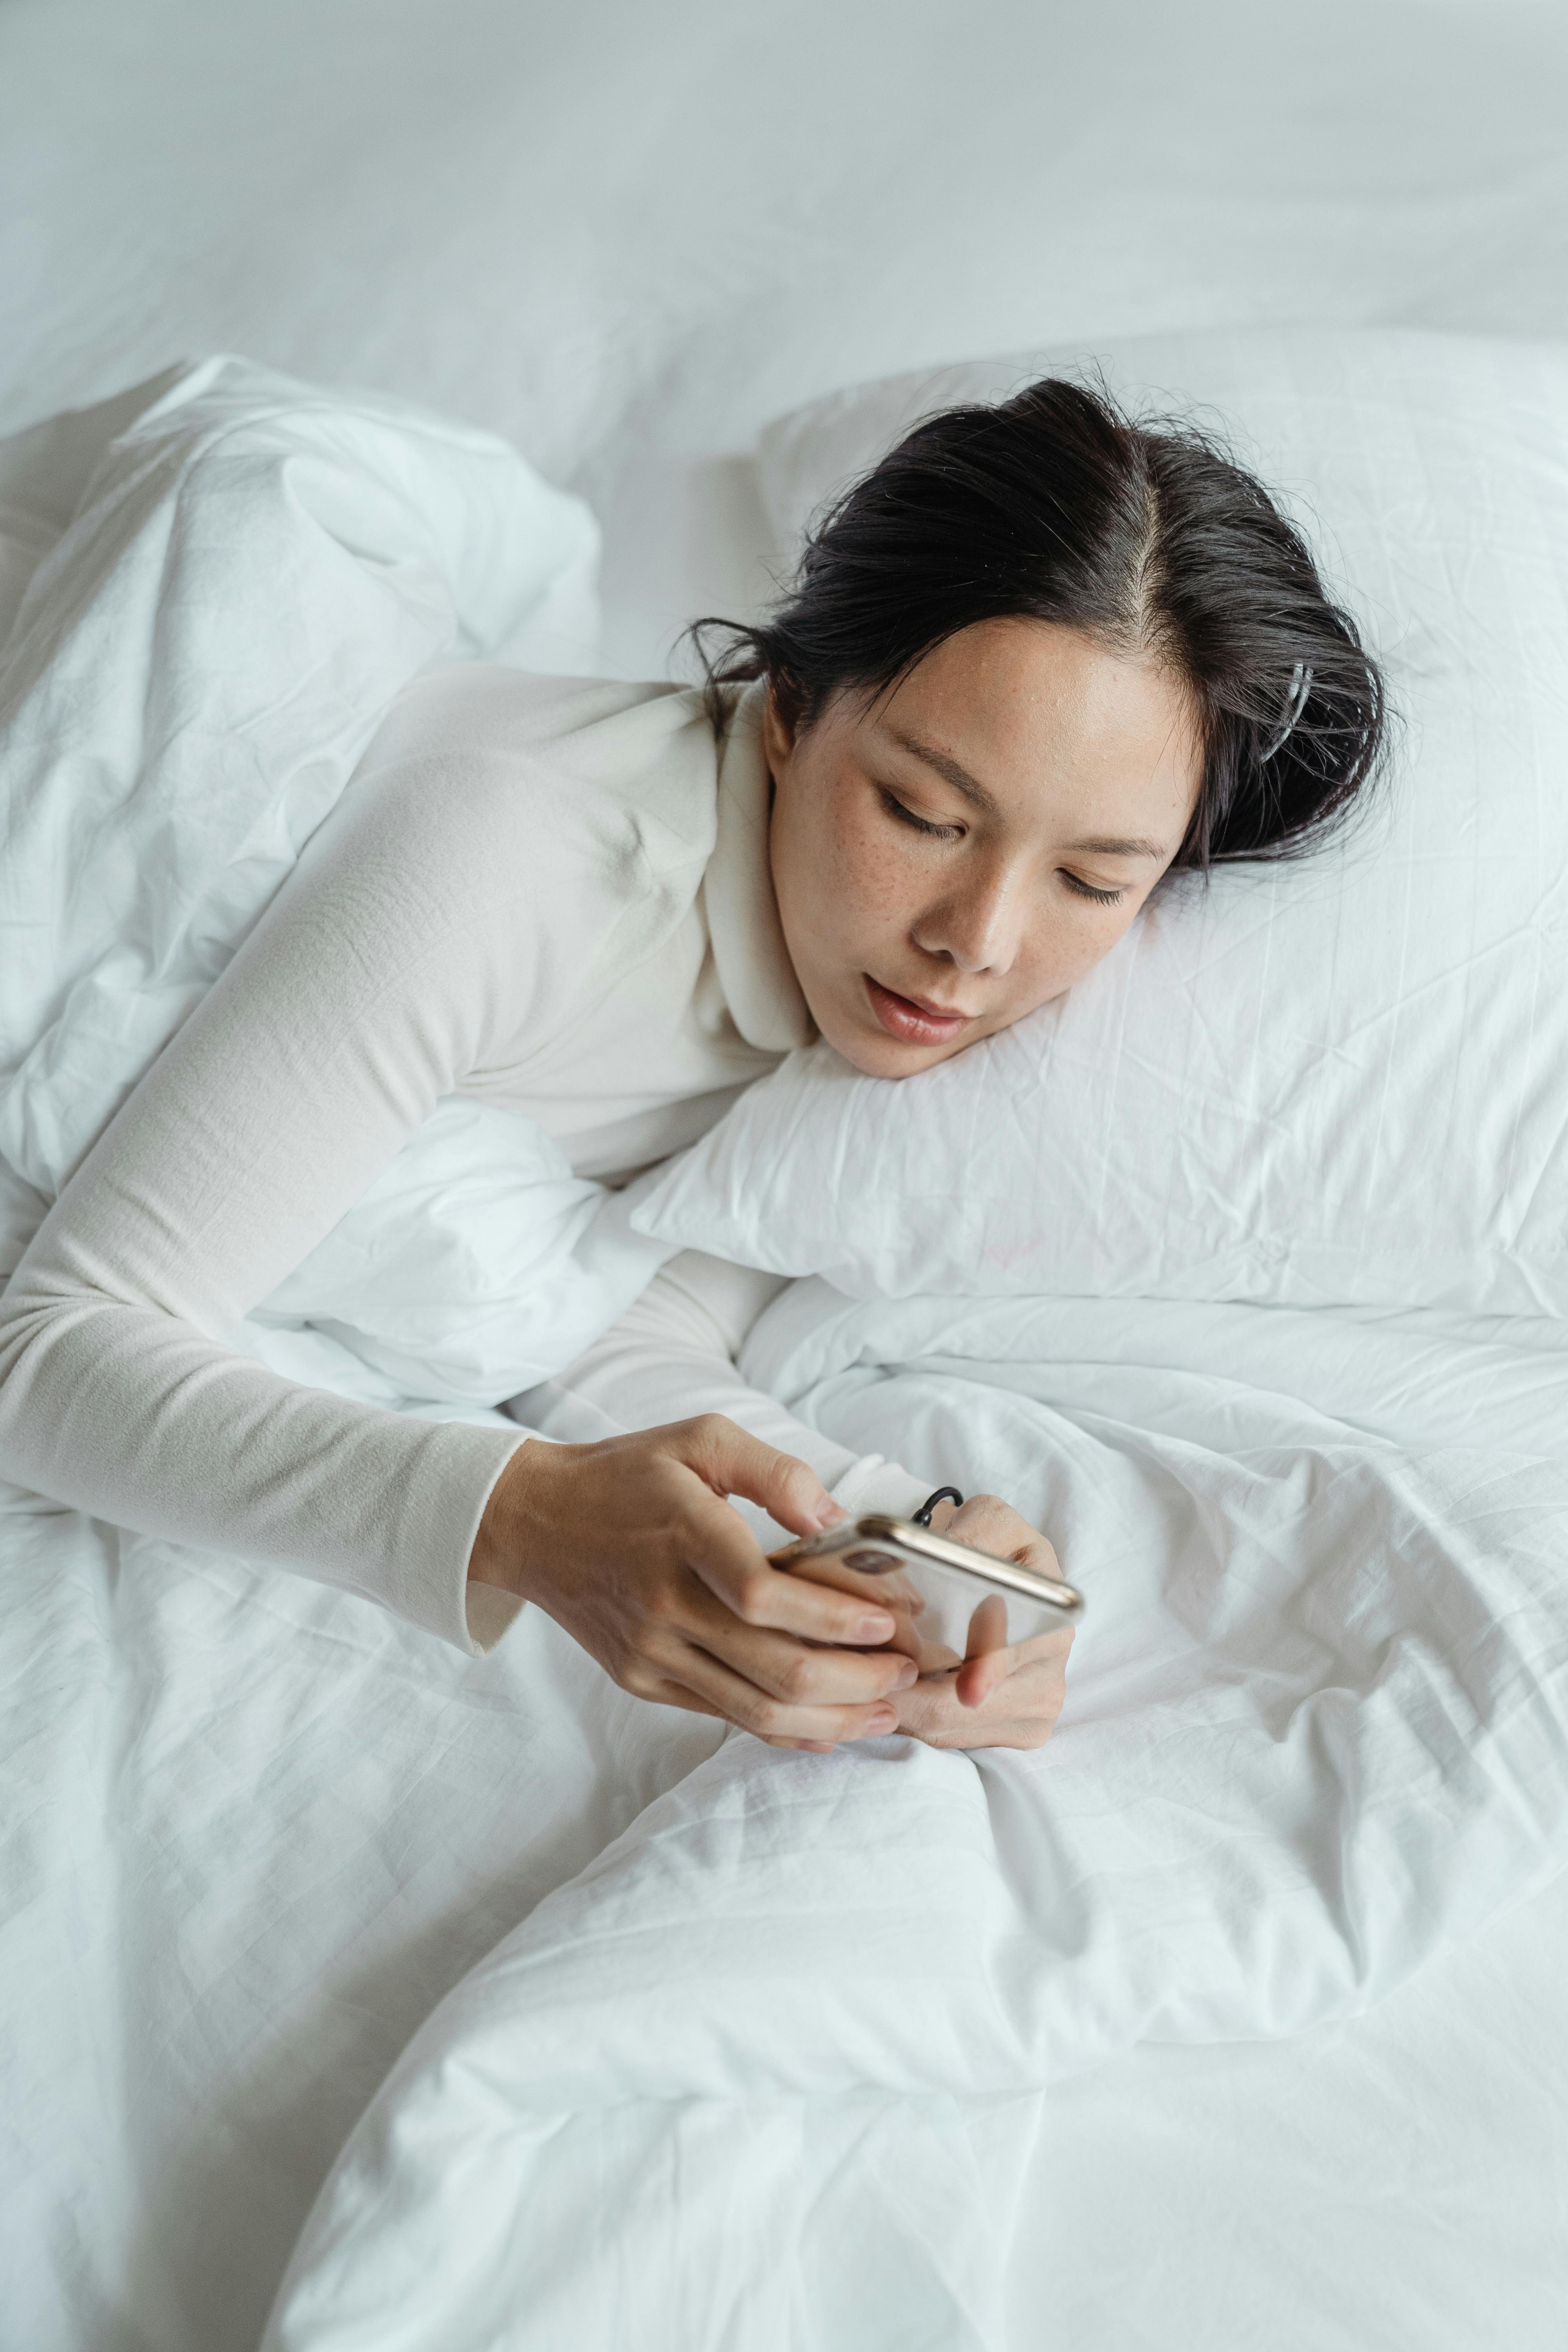 Una mujer escribiendo en su teléfono mientras está tumbada en la cama | Fuente: Pexels